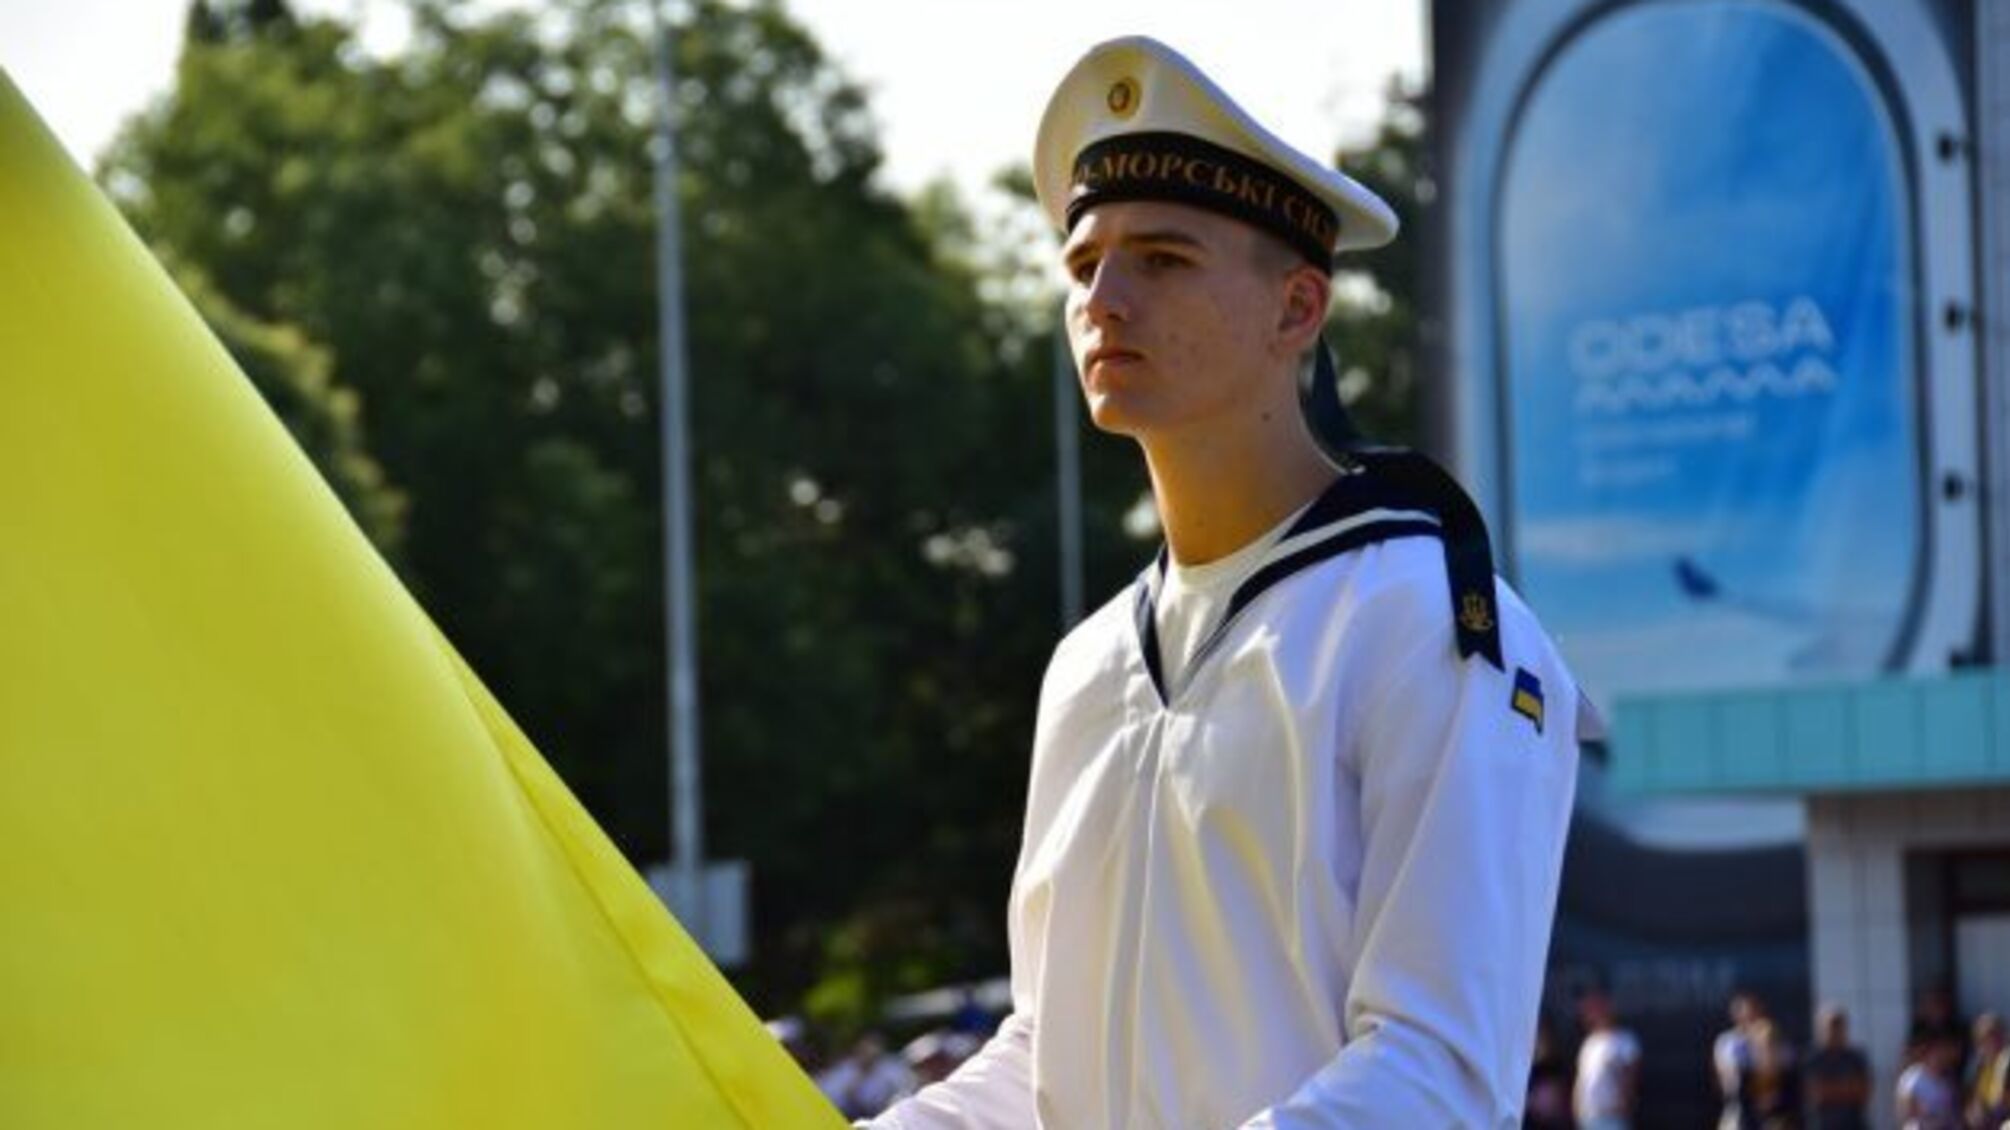 Український флот від Болграда до Маріуполя водночас зі всією країною підняв Прапор